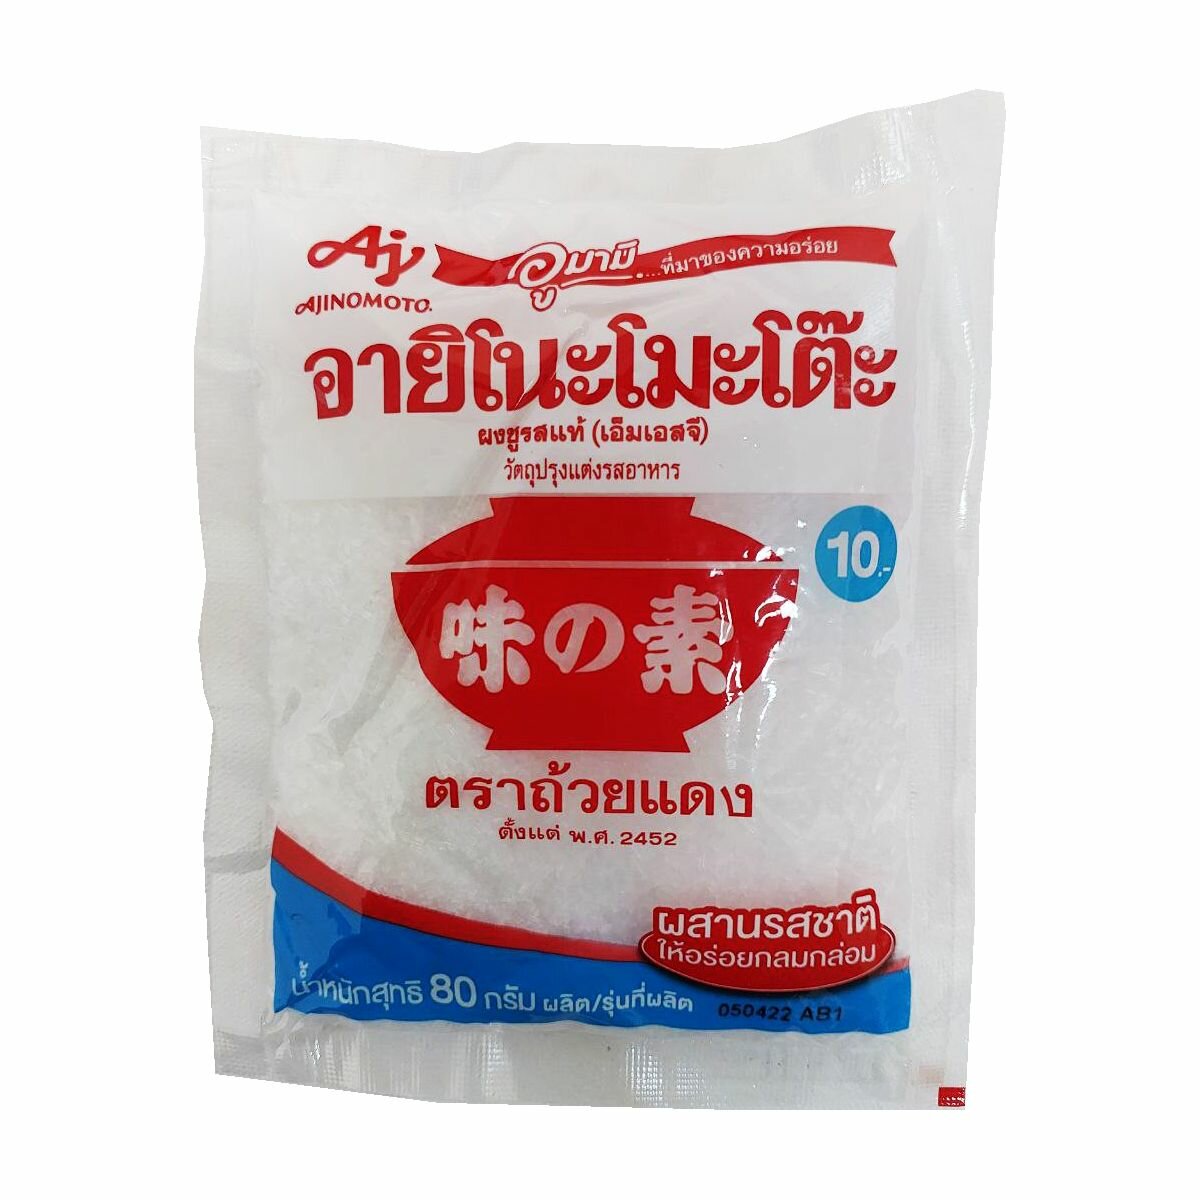 Глутамат натрия натуральный порошок приправа усилитель вкуса и аромата Ajinomoto Таиланд 72 гр.